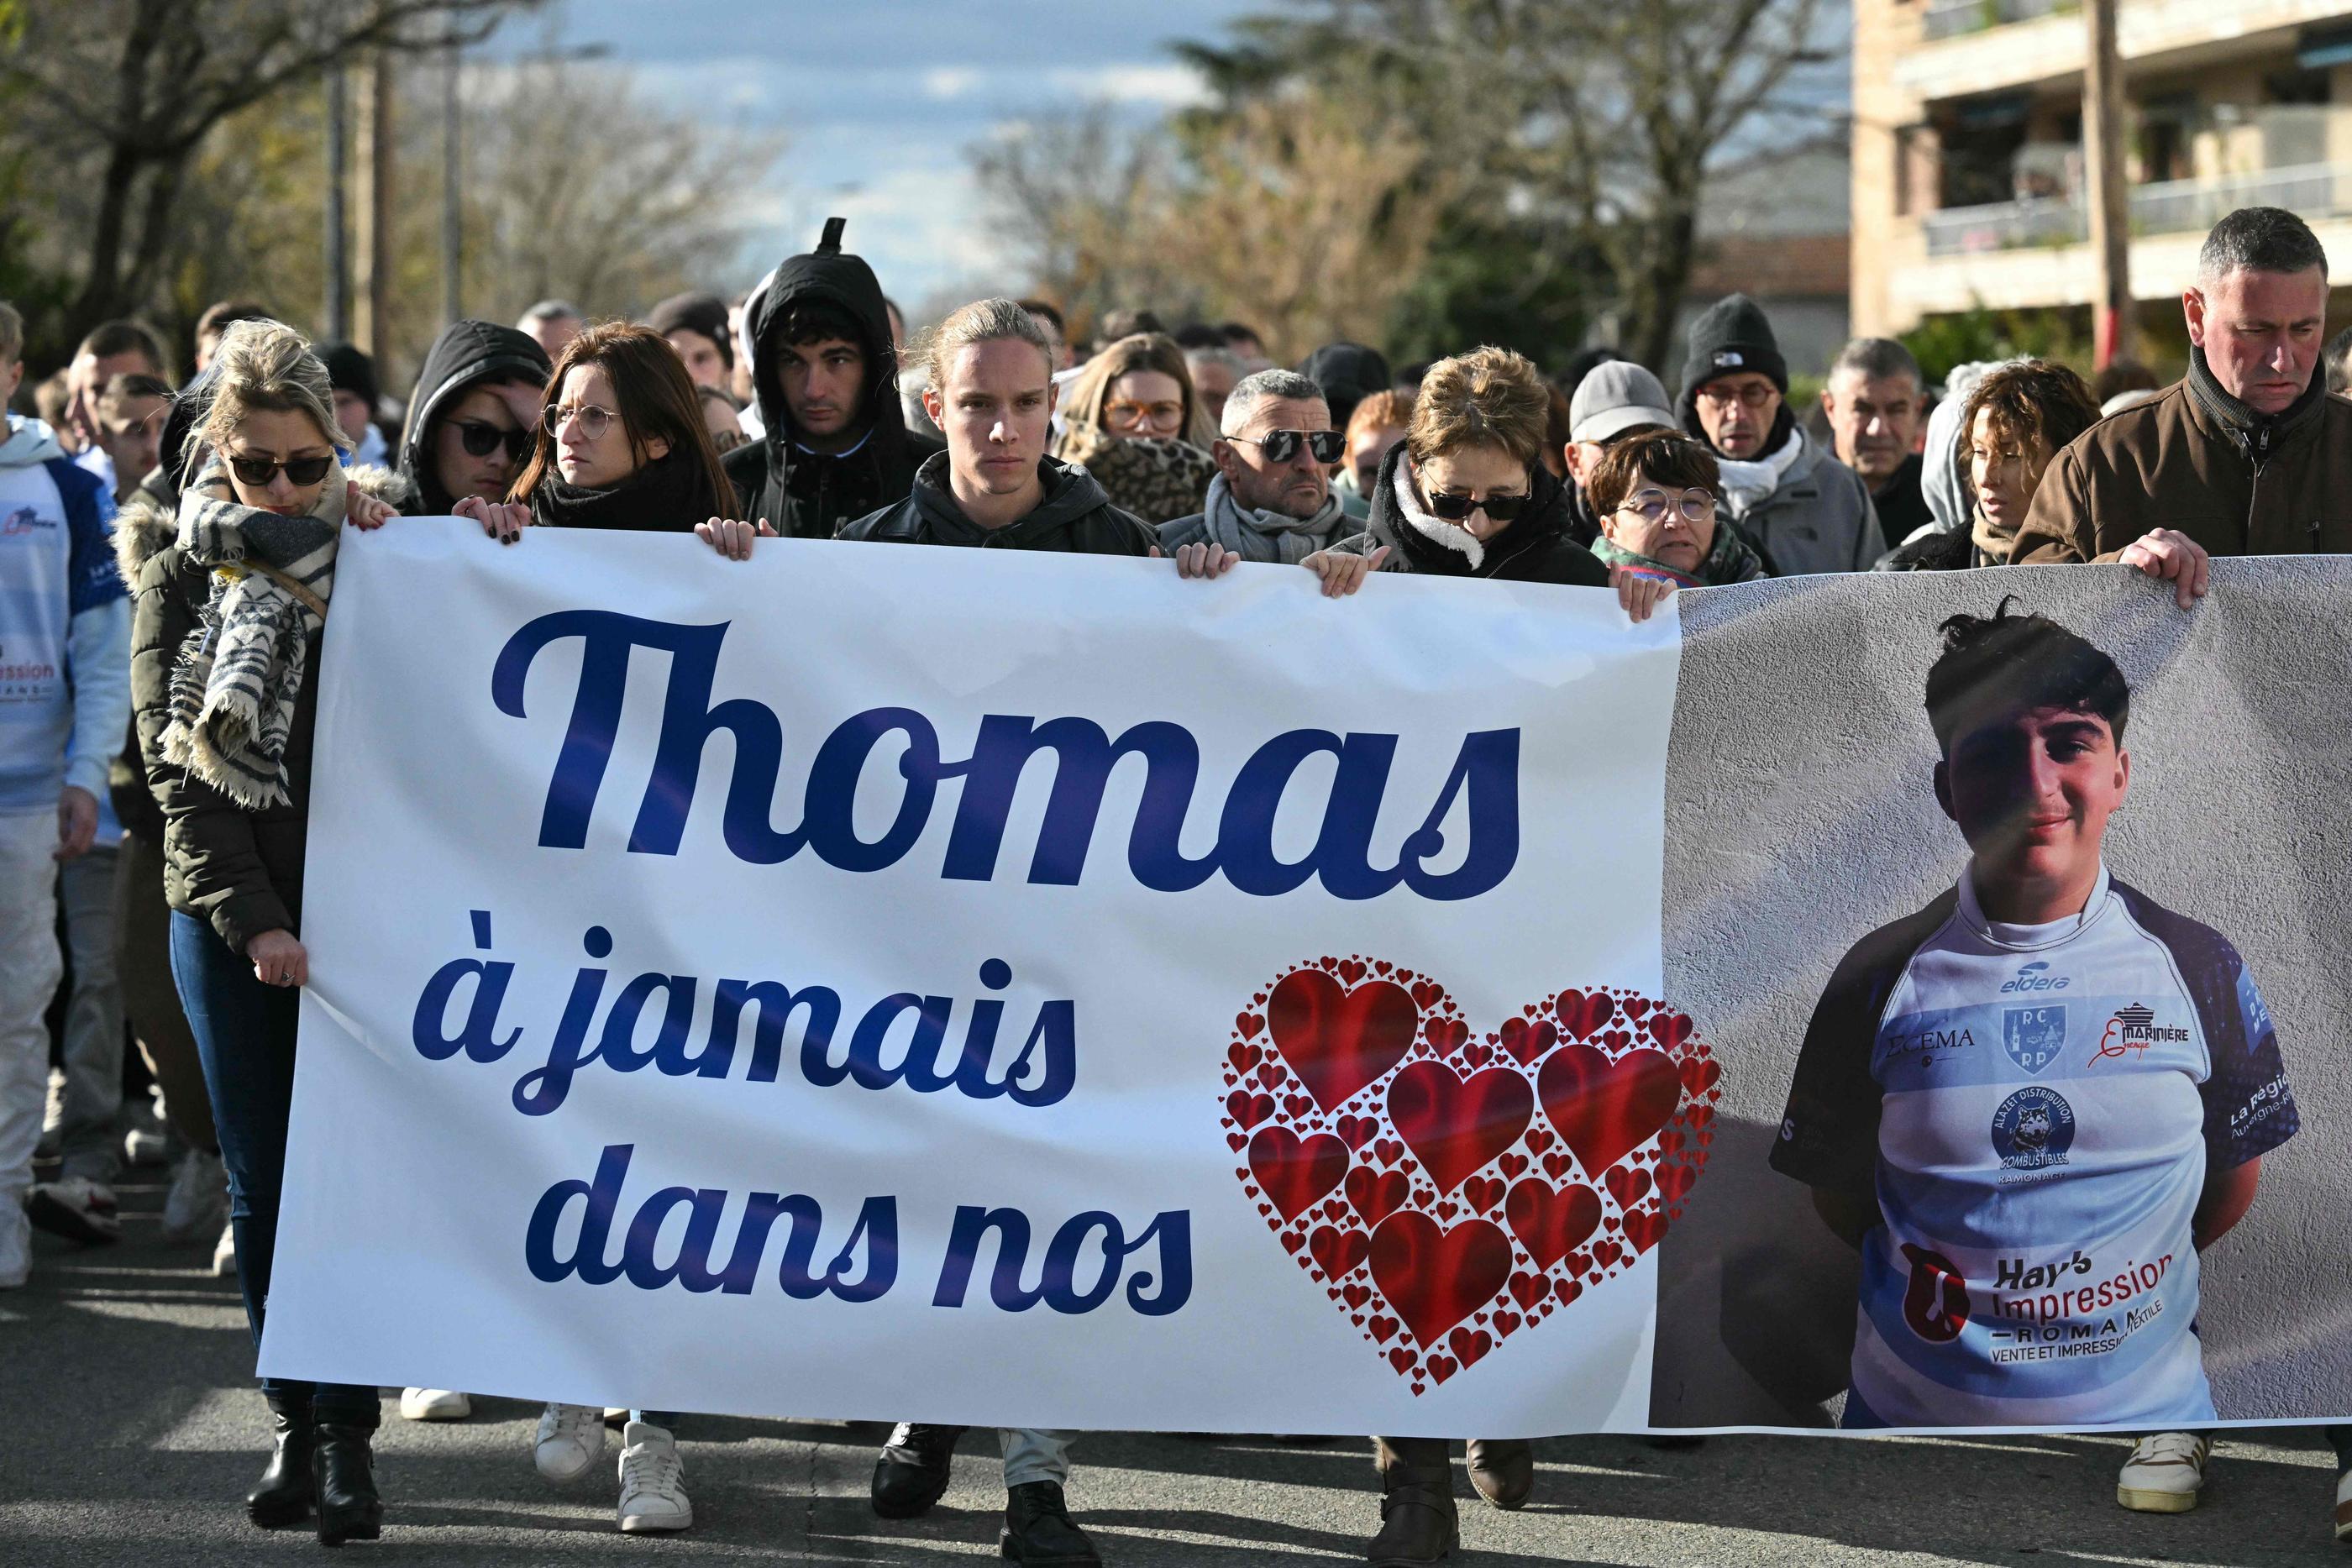 Une semaine après la mort de Thomas, la tension ne faiblit pas dans la Drôme, notamment à Roman-sur-Isère. AFP/Olivier Chassignole